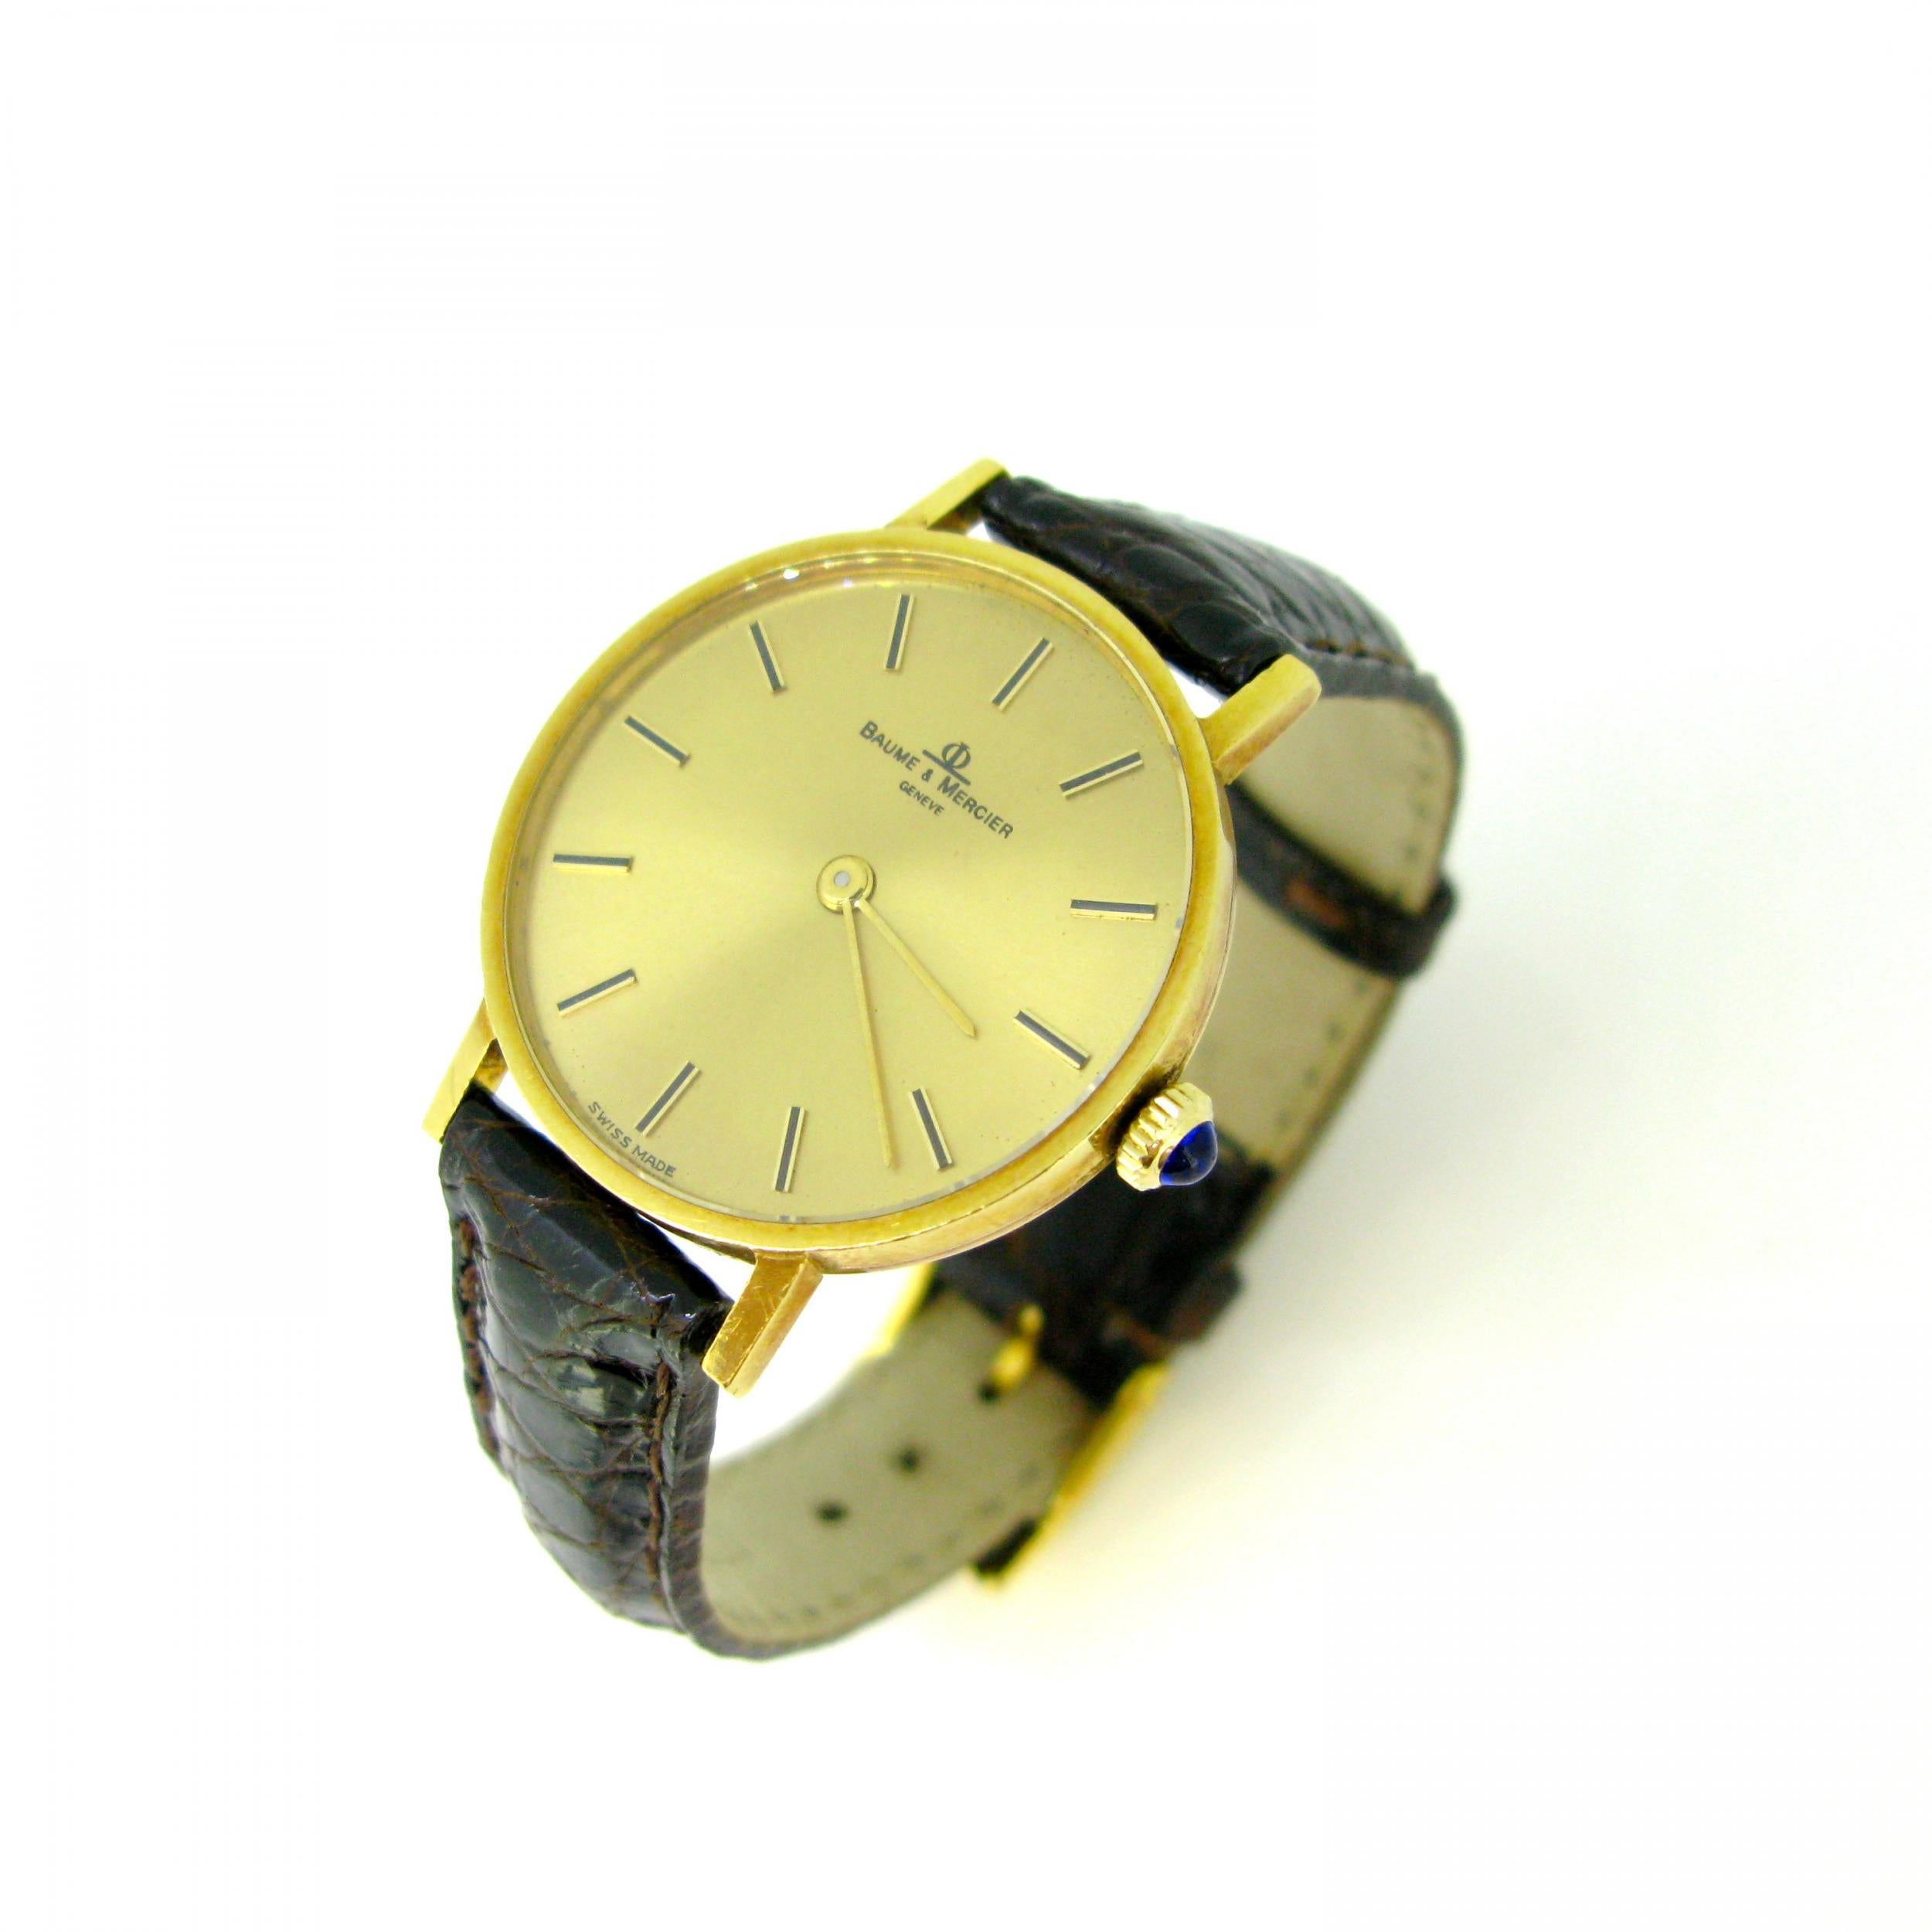  Baume & Mercier 35121 Montre-bracelet mécanique en or jaune Unisexe 